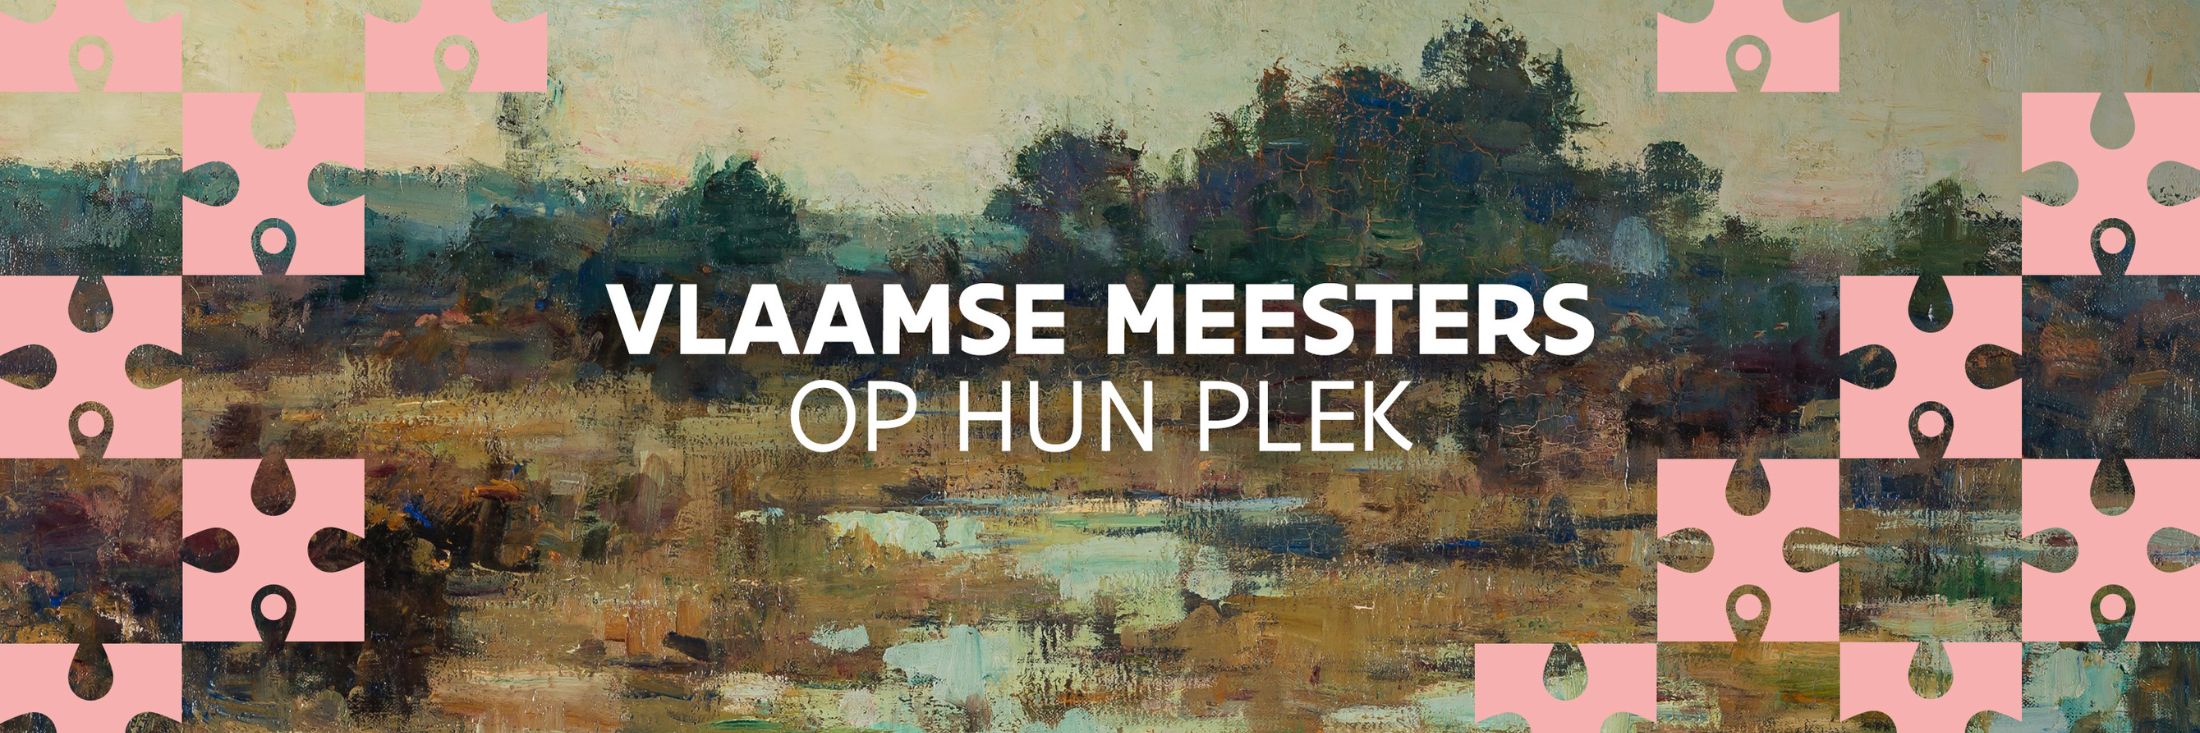 Header voor de campagne Vlaamse meesters